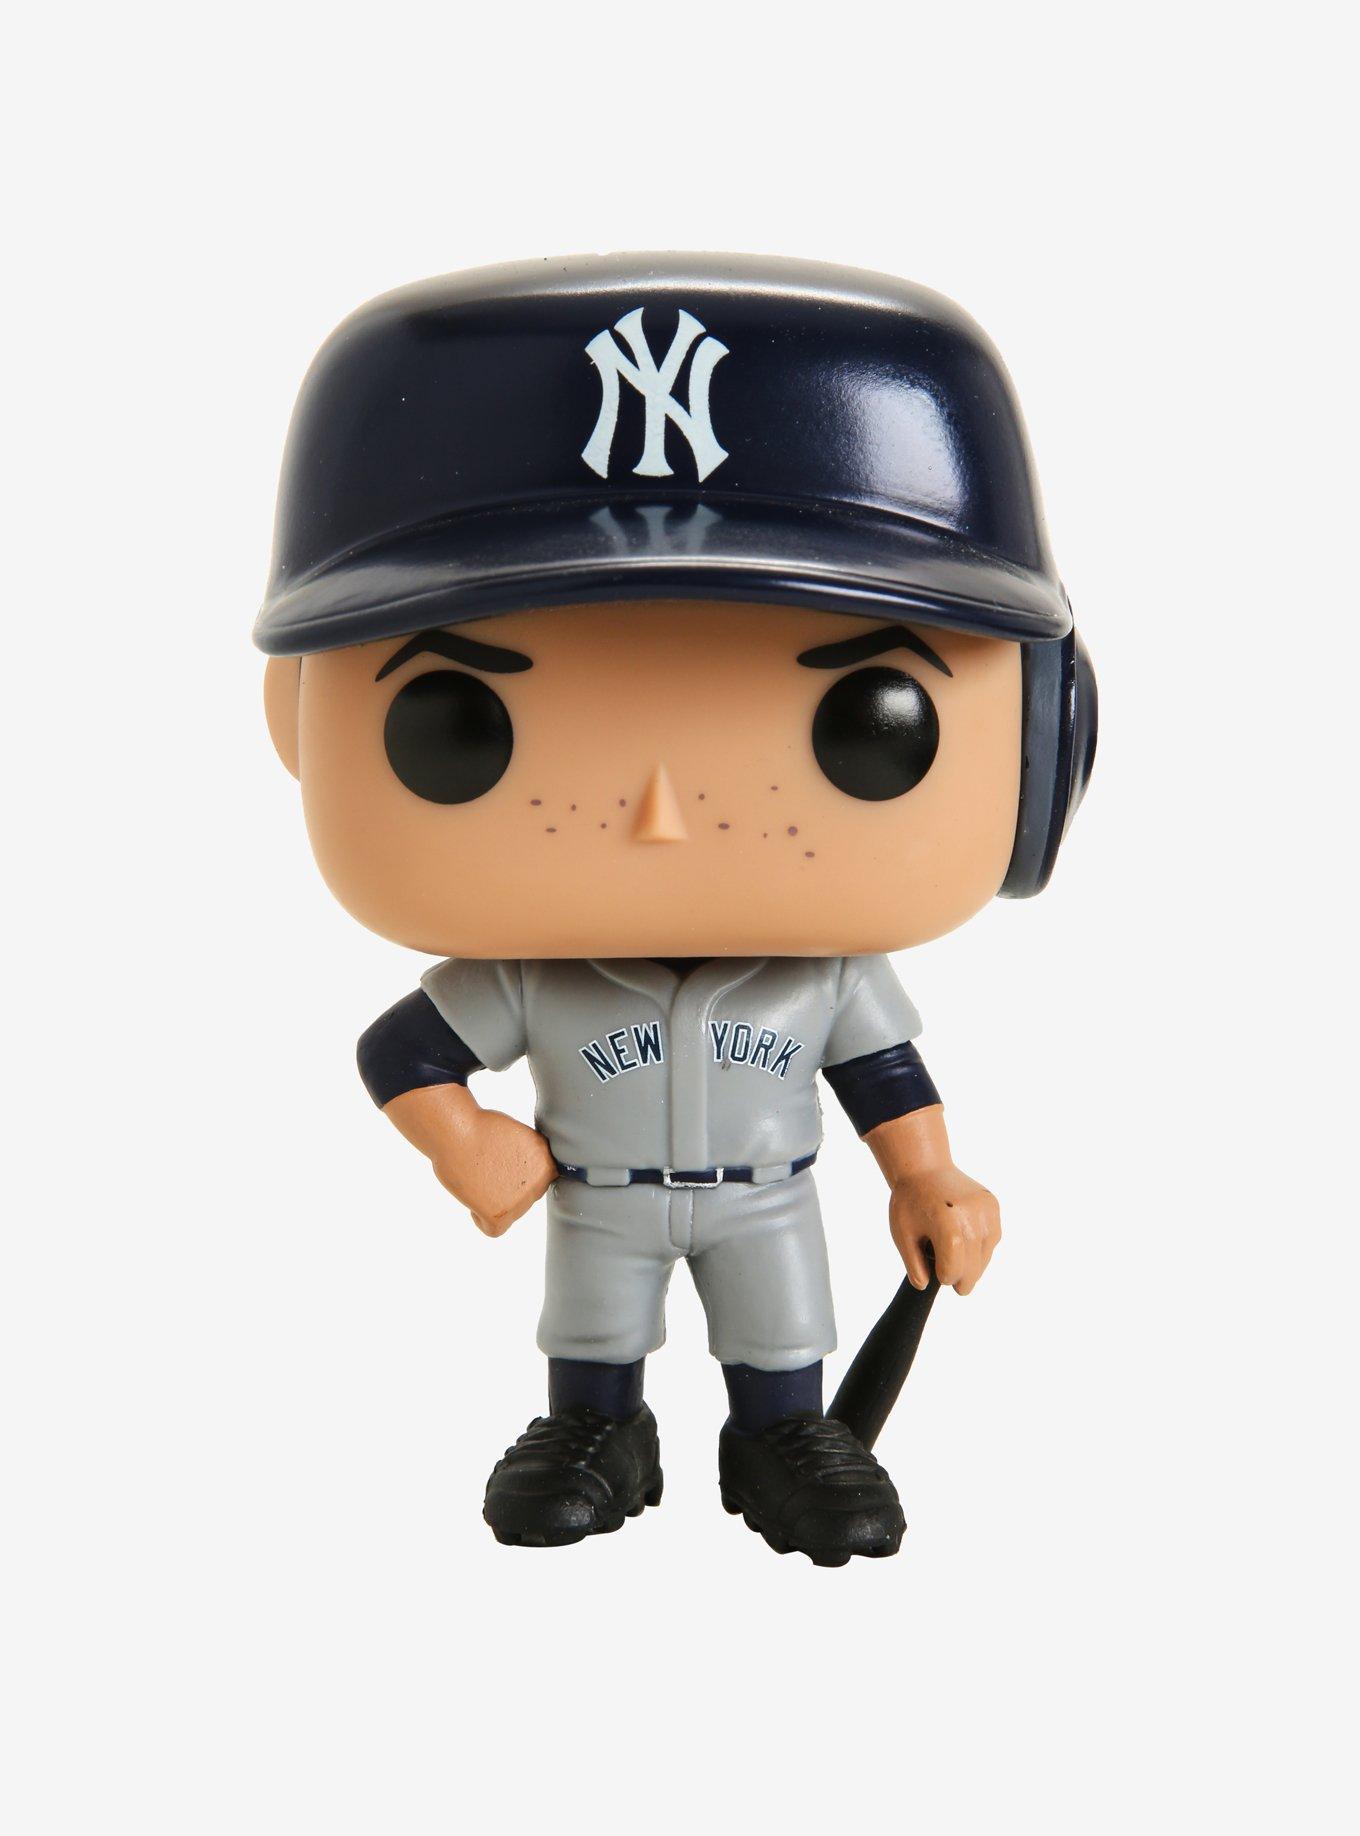 Funko on X: Toy Fair New York Reveals: MLB® Pop! #FunkoTFNY @mlb